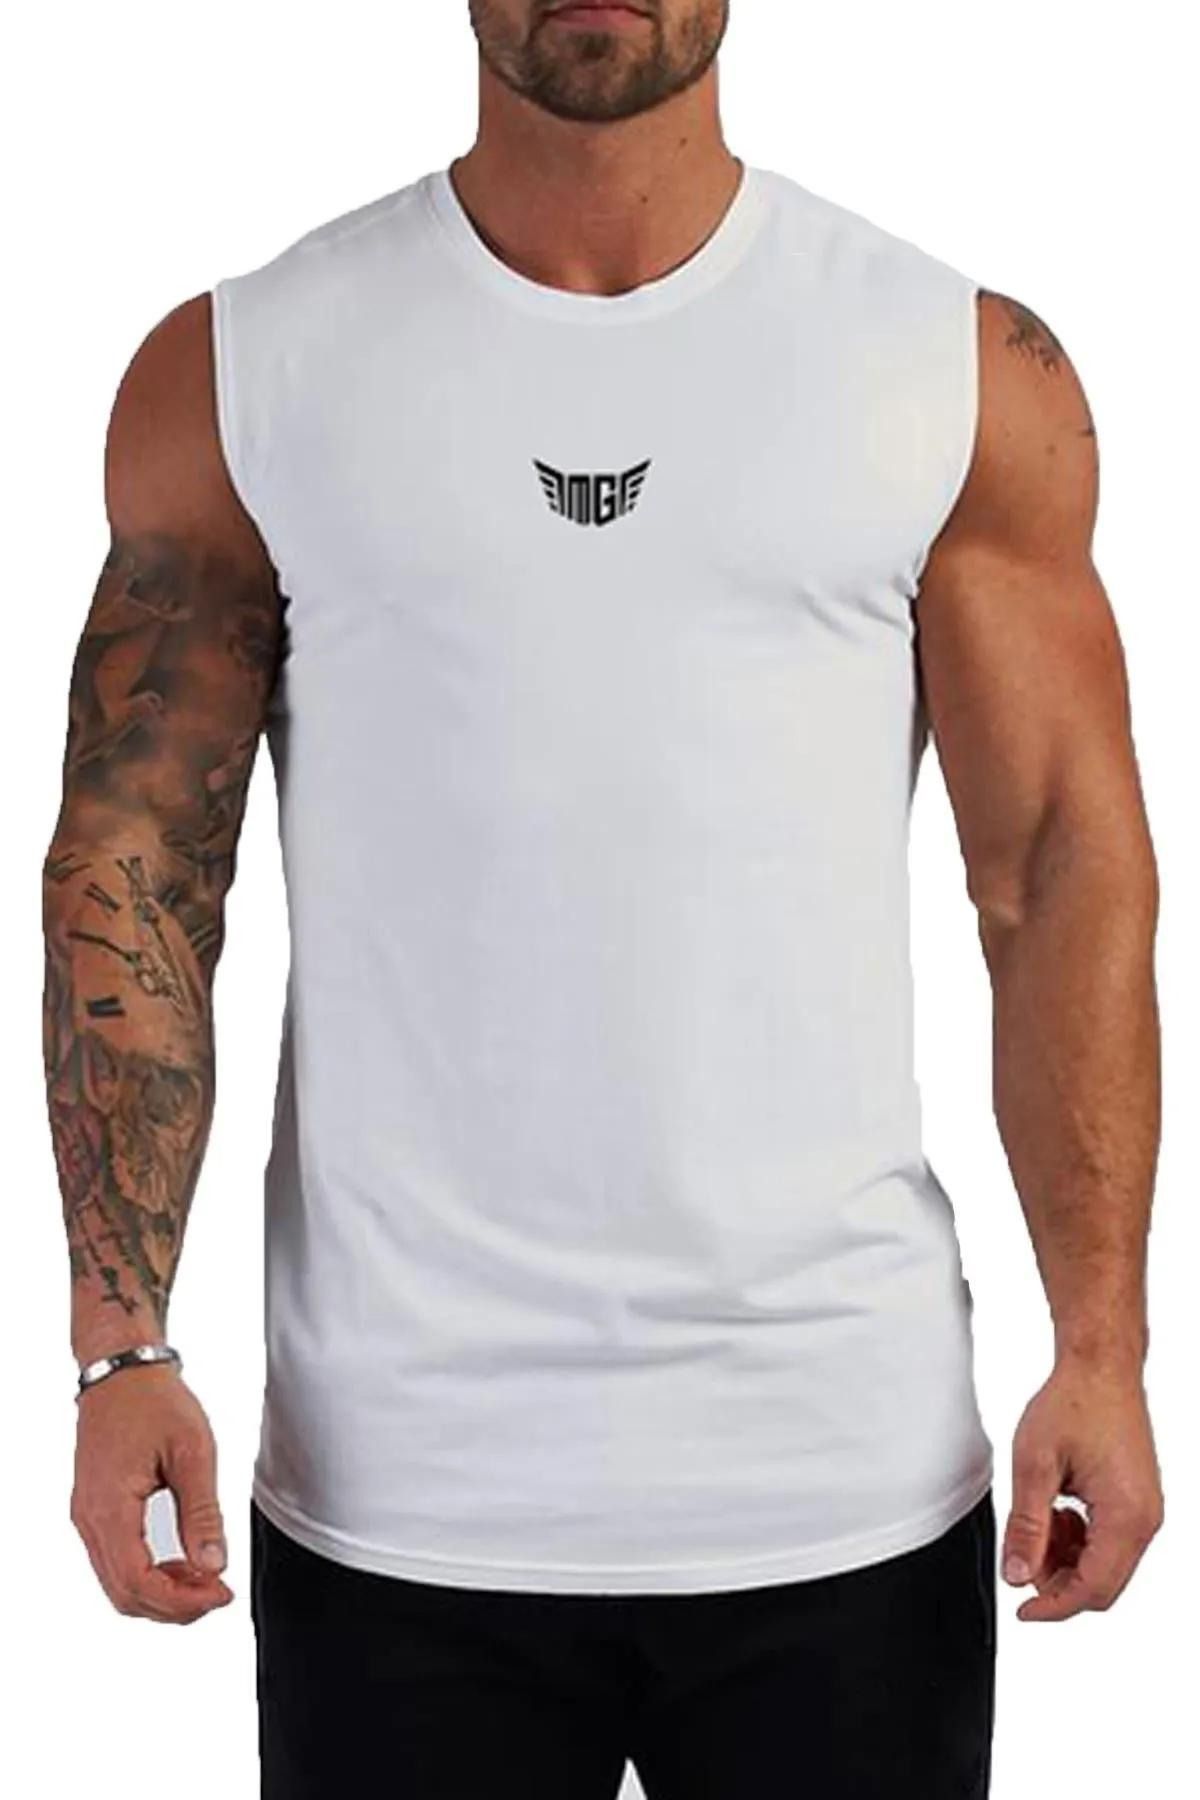 GENIUS STORE Erkek Nem Emici Hızlı Kuruma Atletik Teknik Performans Sporcu Sıfır Kol T-shirt MG-ATLET